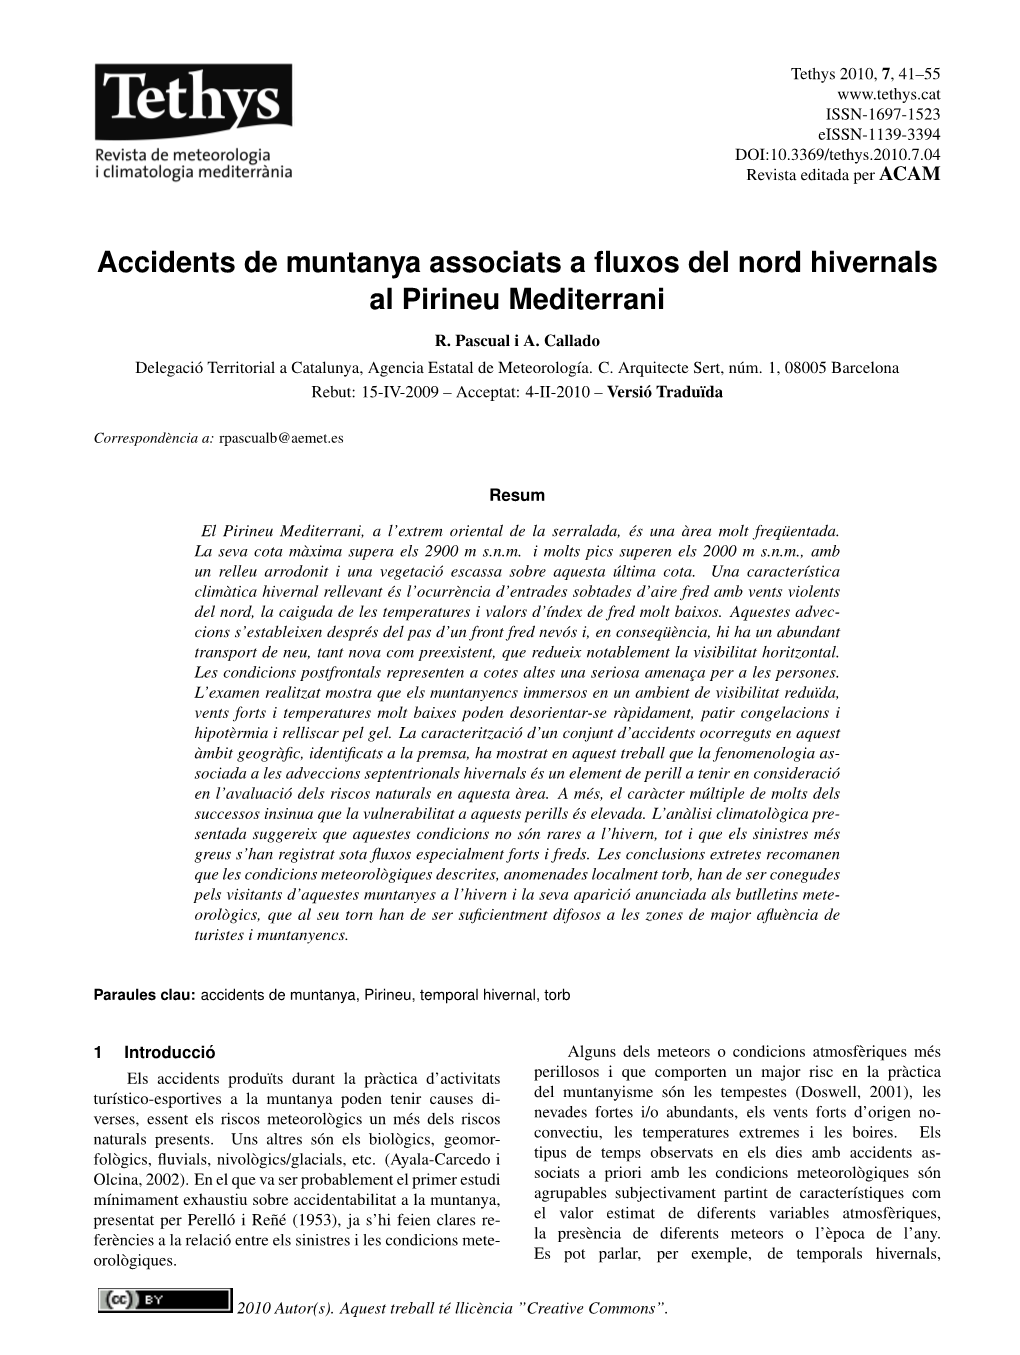 Accidents De Muntanya Associats a Fluxos Del Nord Hivernals Al Pirineu Mediterrani